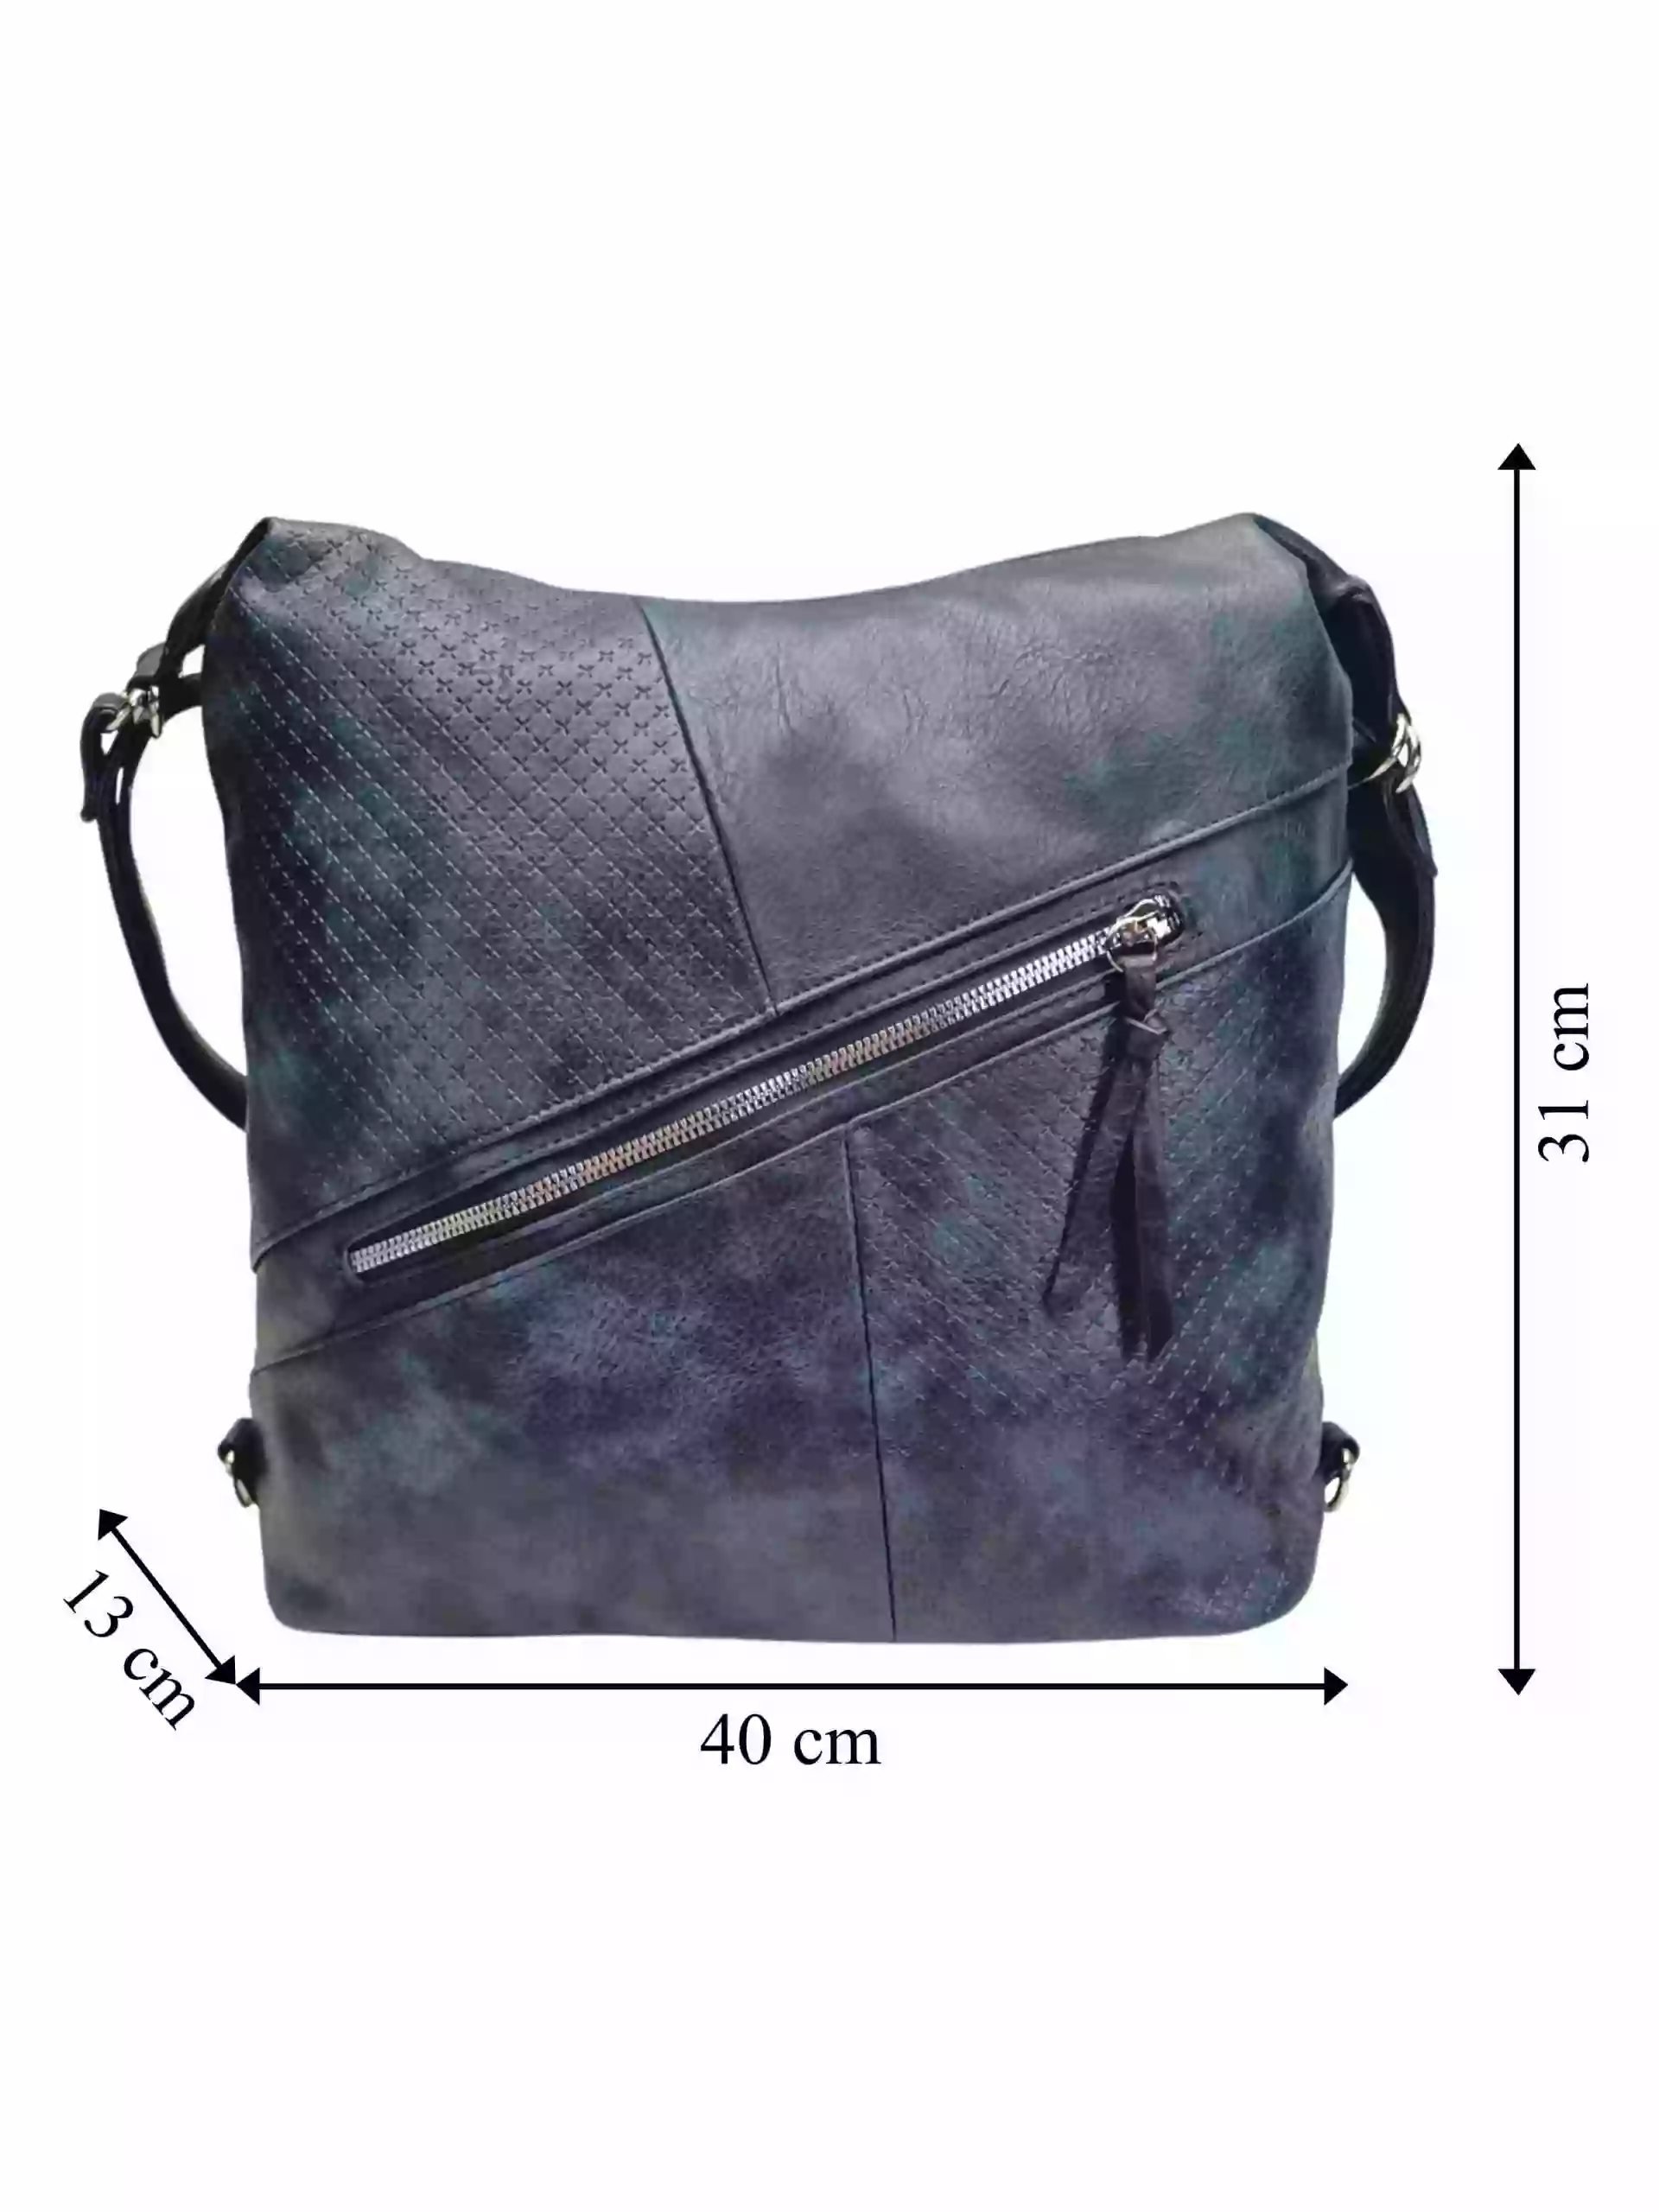 Velký tmavě modrý kabelko-batoh s šikmou kapsou, Tapple, H18077N+, přední strana kabelko-batohu 2v1 s rozměry